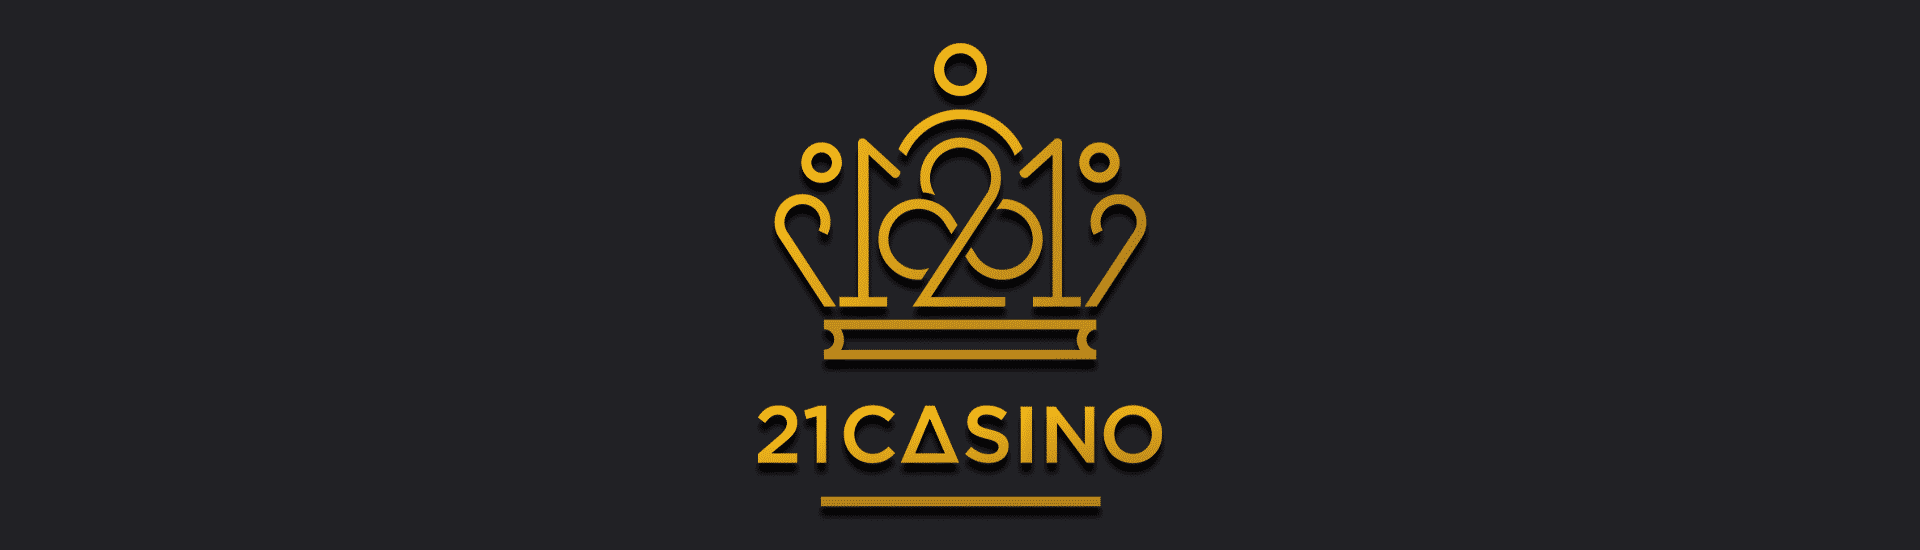 21 Casino Featured Image